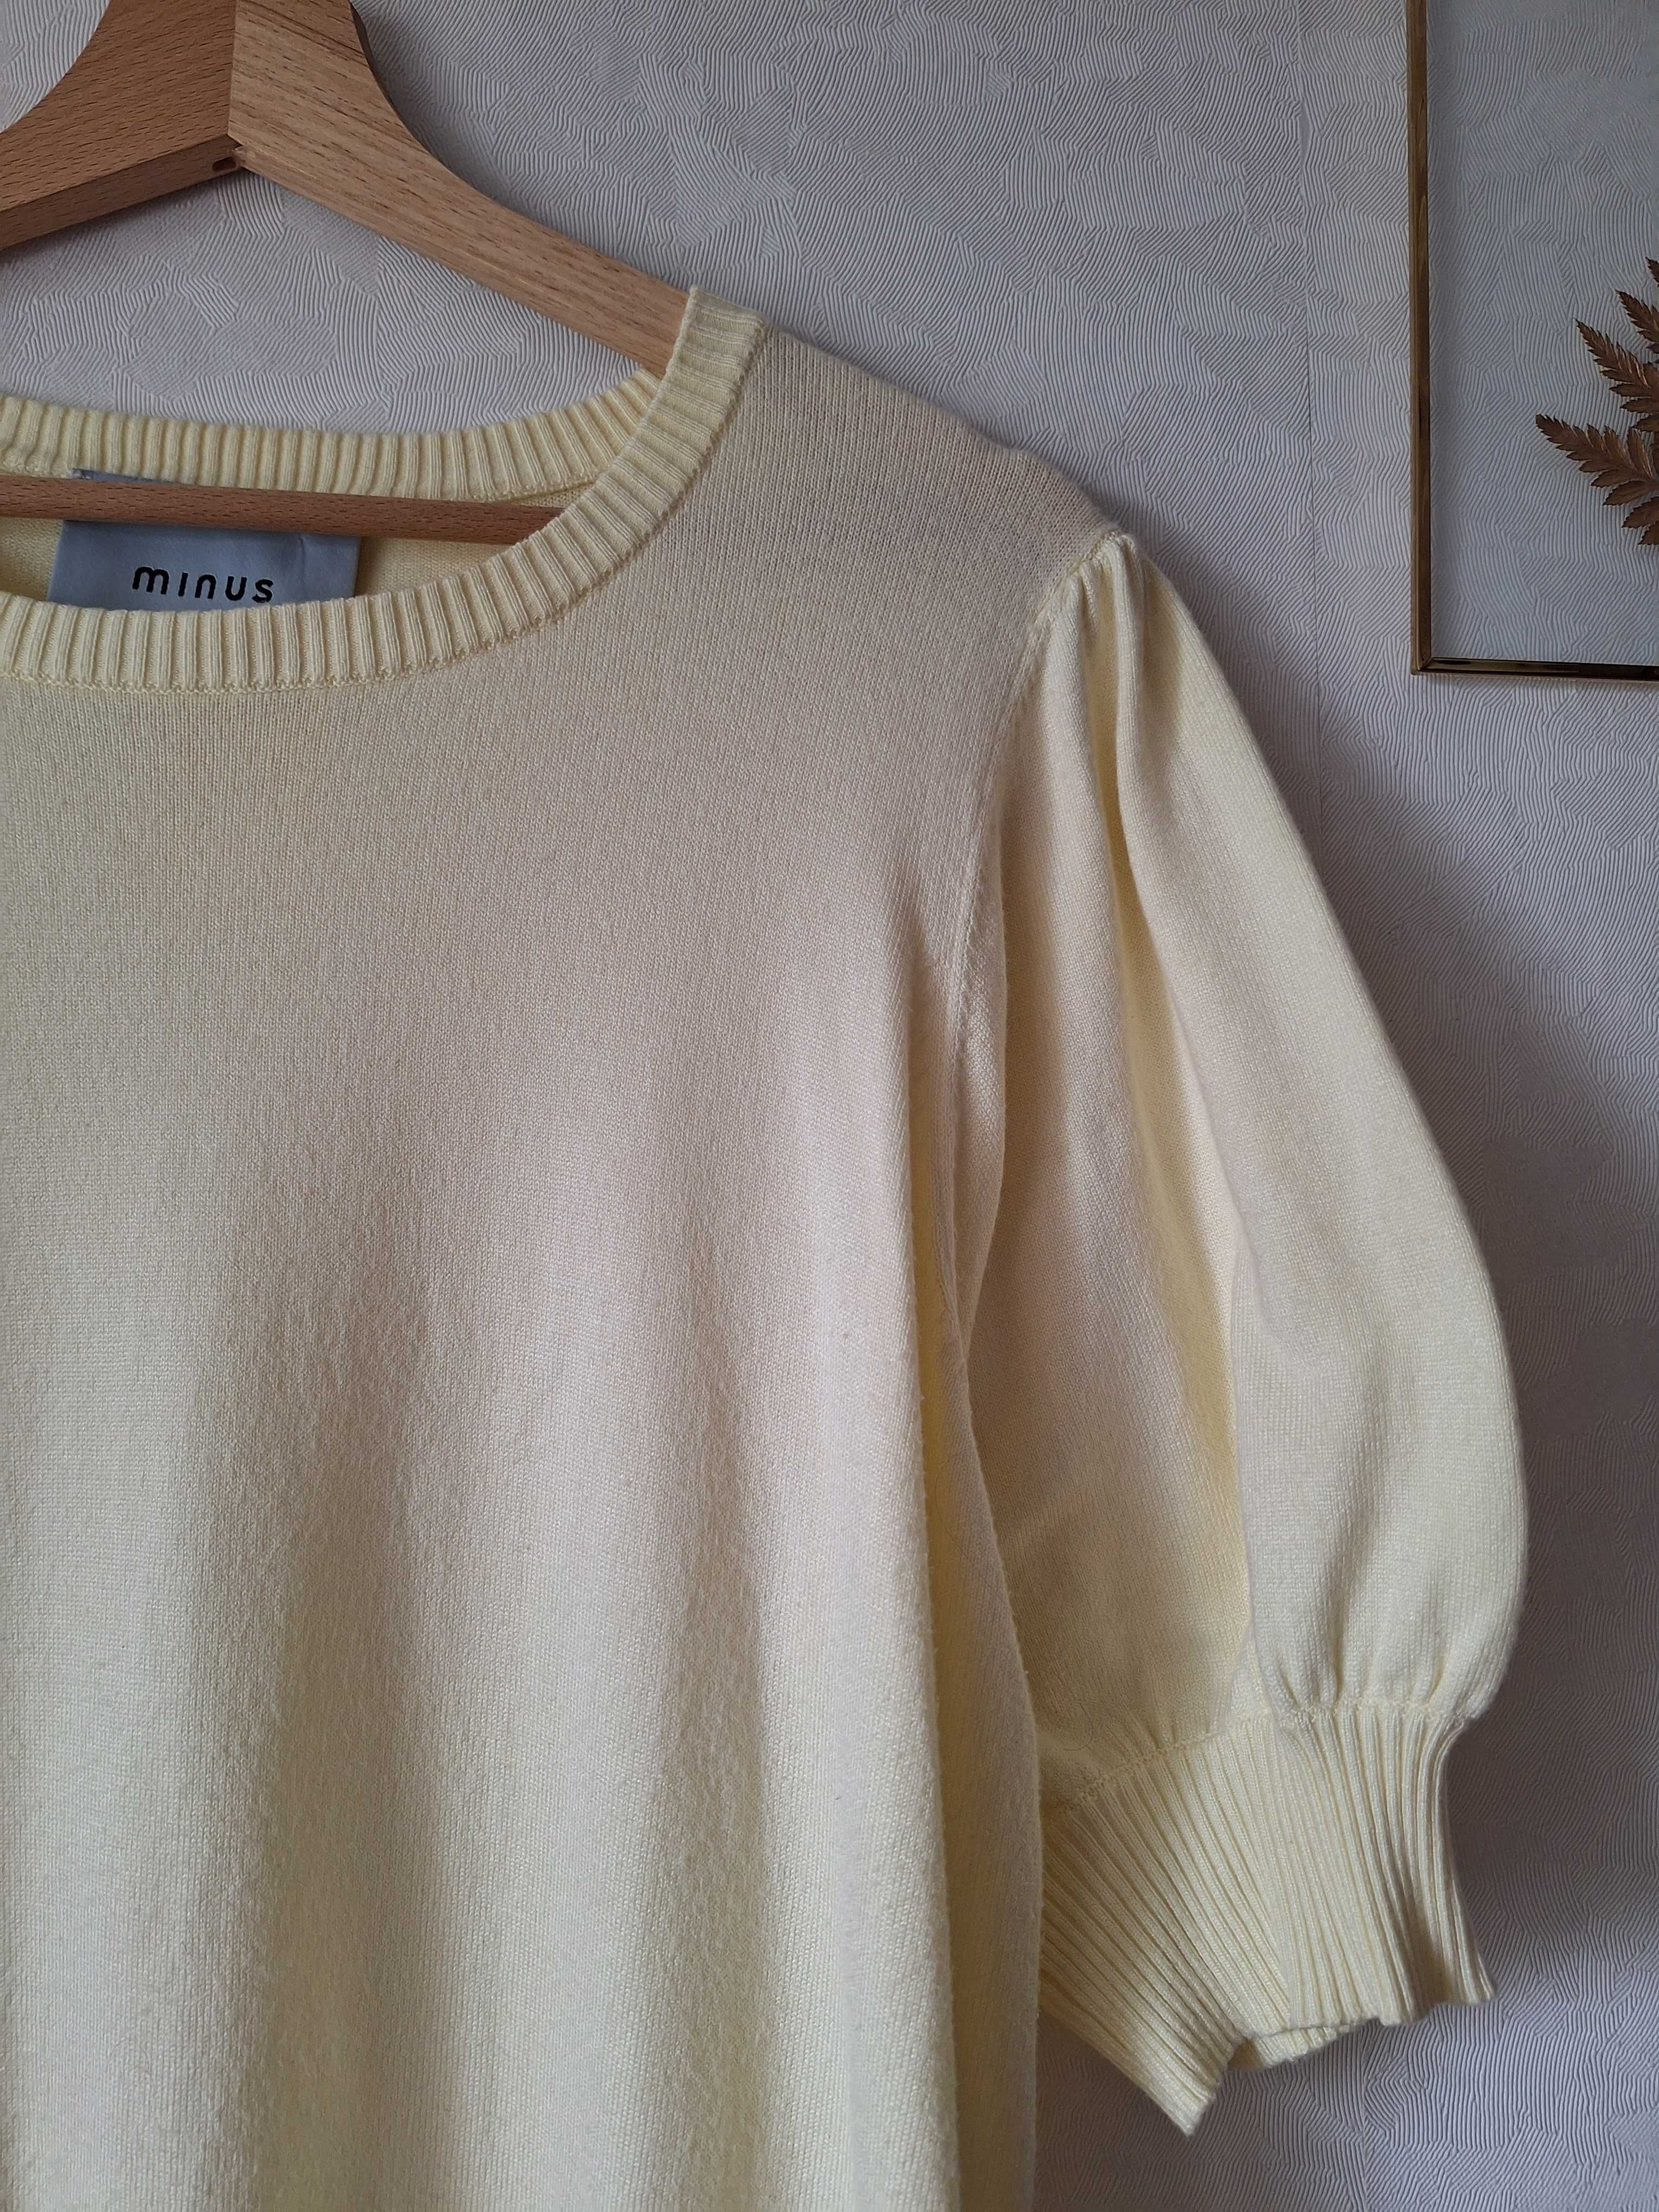 Cytrynowa bluzka L sweterkowa jasnożółta bananowa krótki rękaw Minus